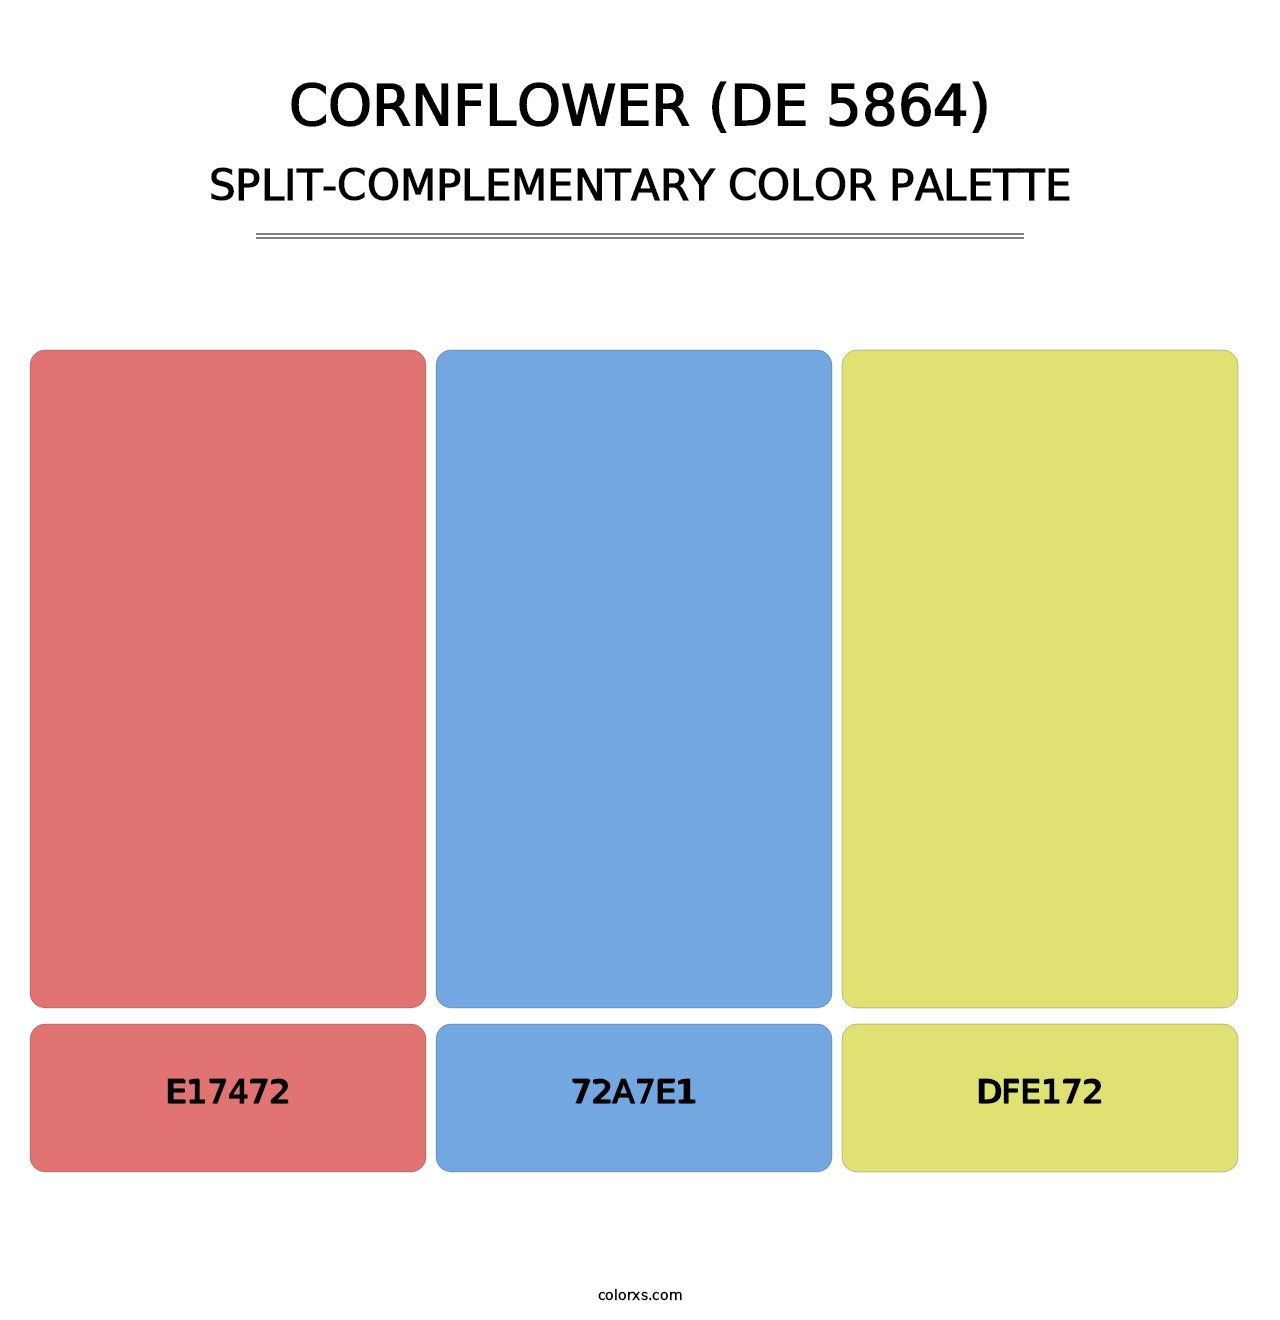 Cornflower (DE 5864) - Split-Complementary Color Palette